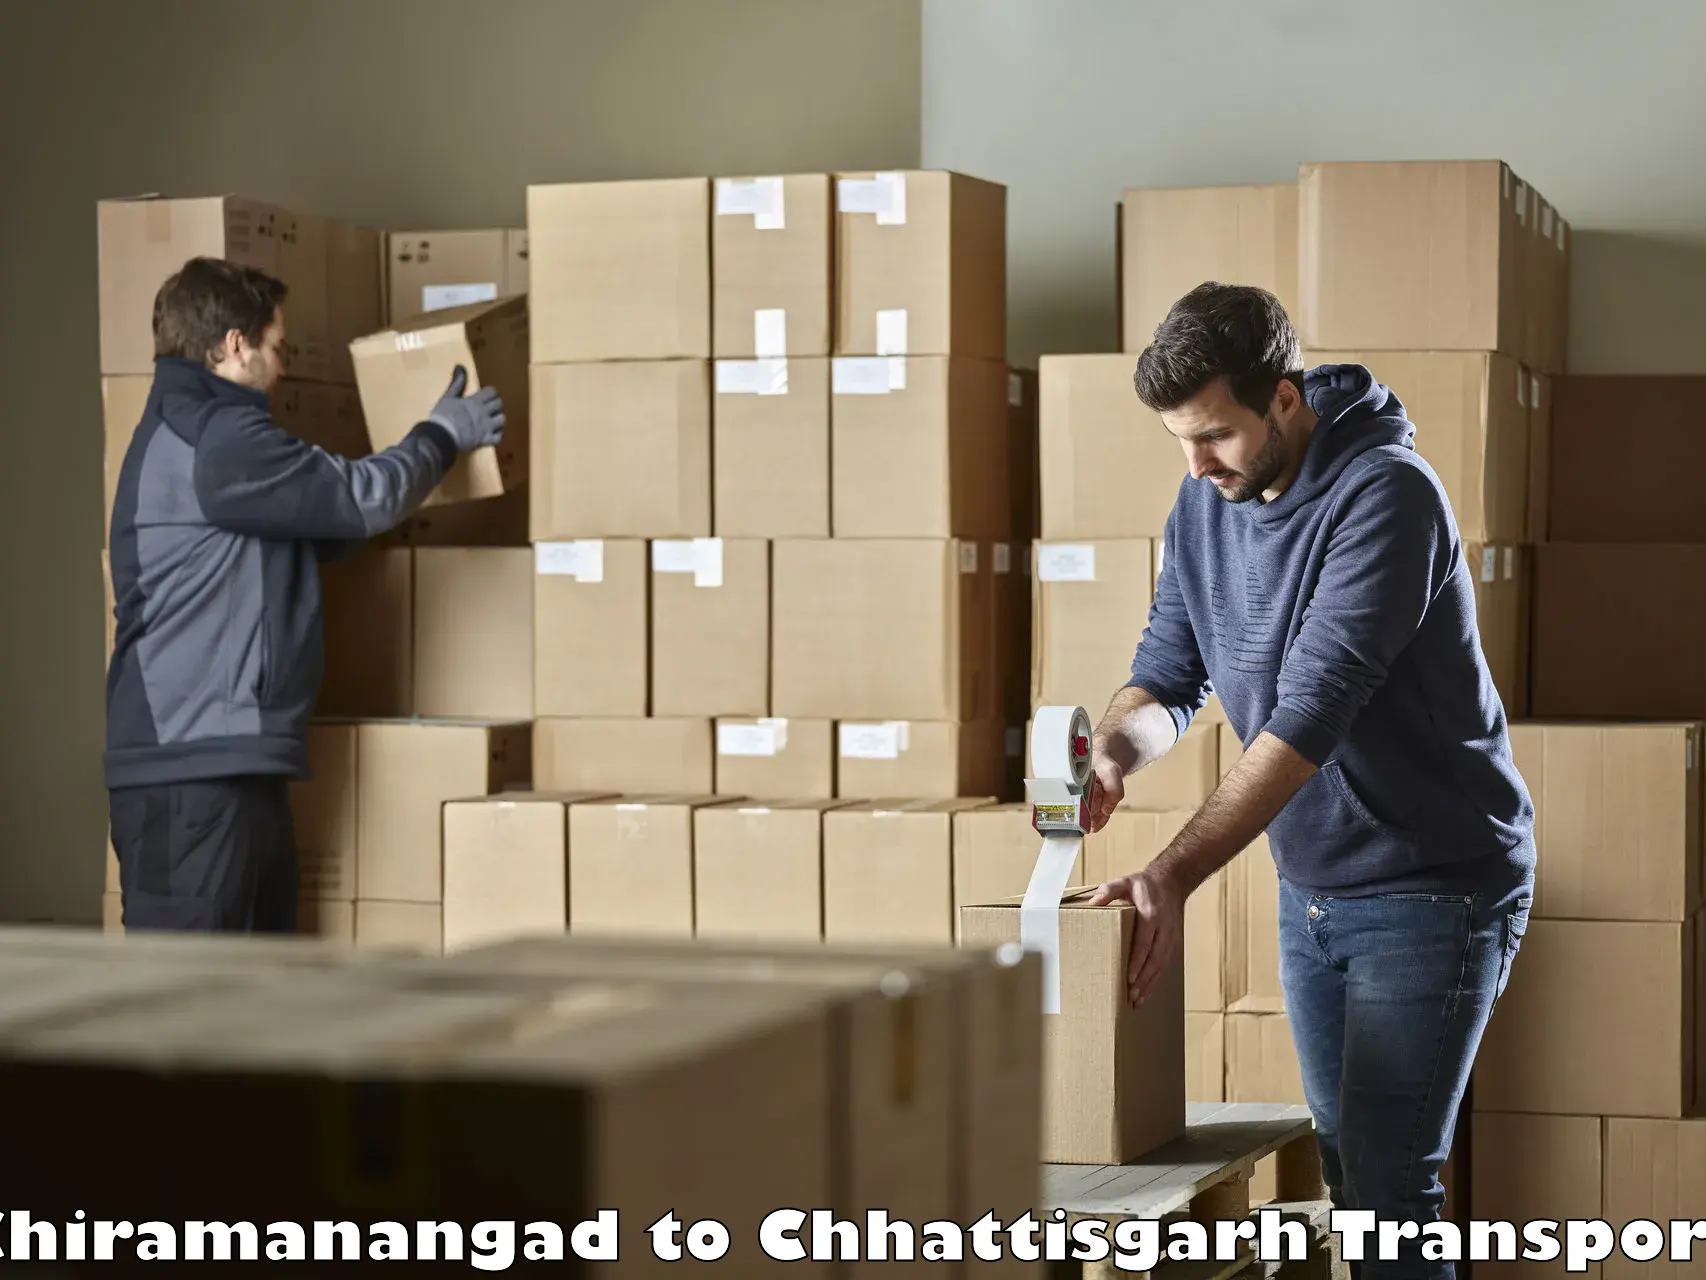 Transport in sharing Chiramanangad to IIT Bhilai